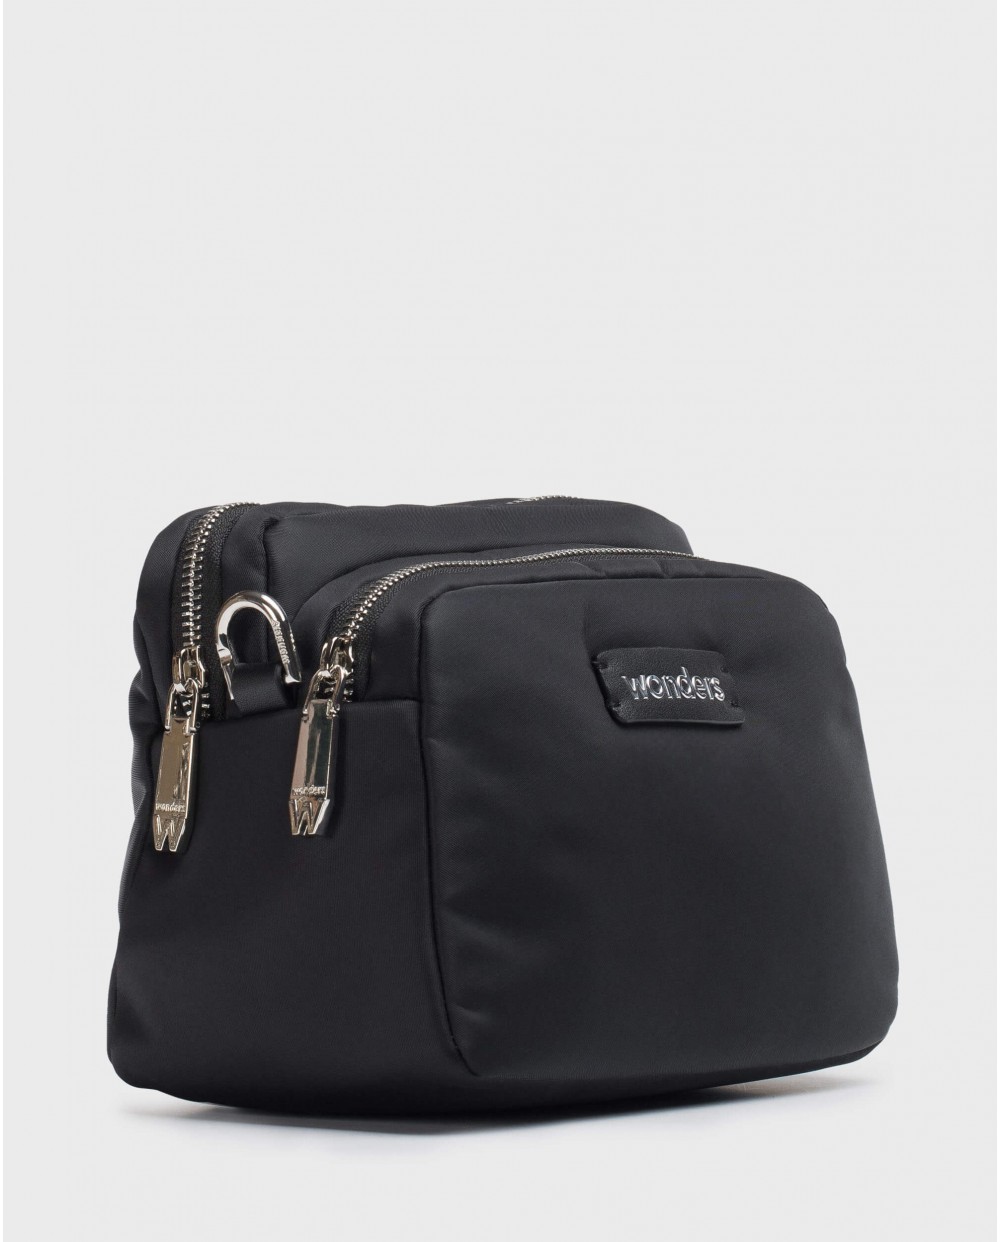 Wonders-Bags-Black Bolero handbag